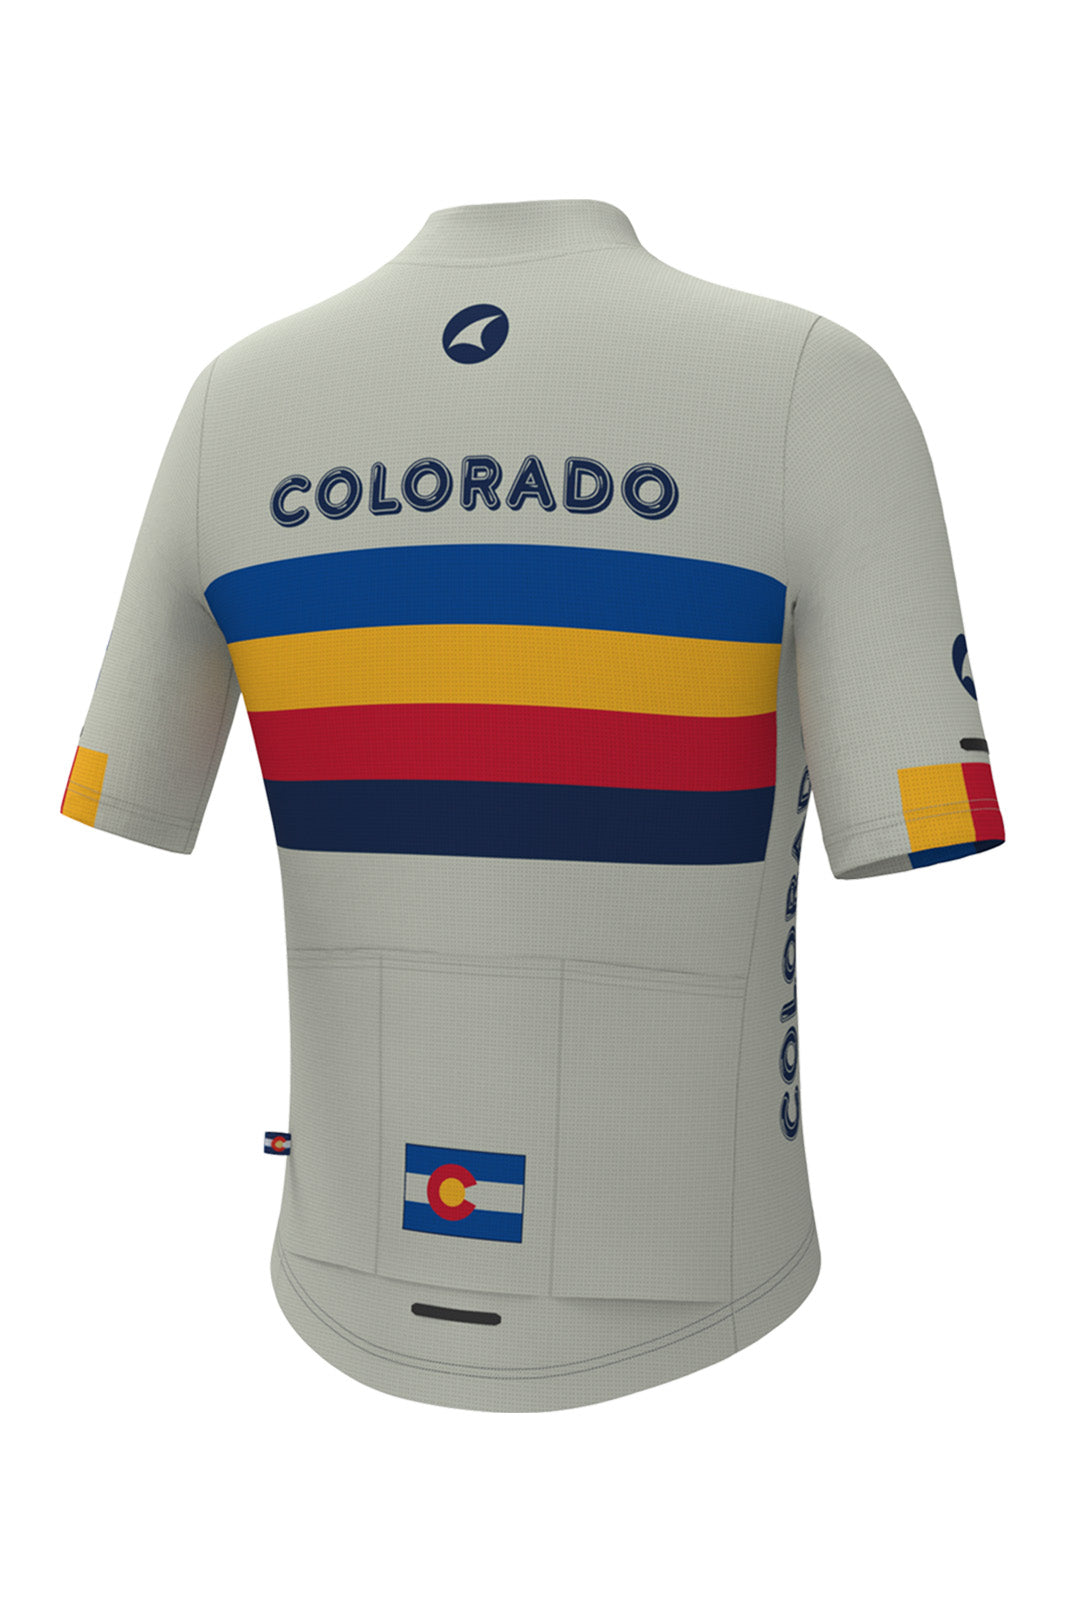 Women's White Retro Colorado Cycling Jersey - Ascent Aero Back View